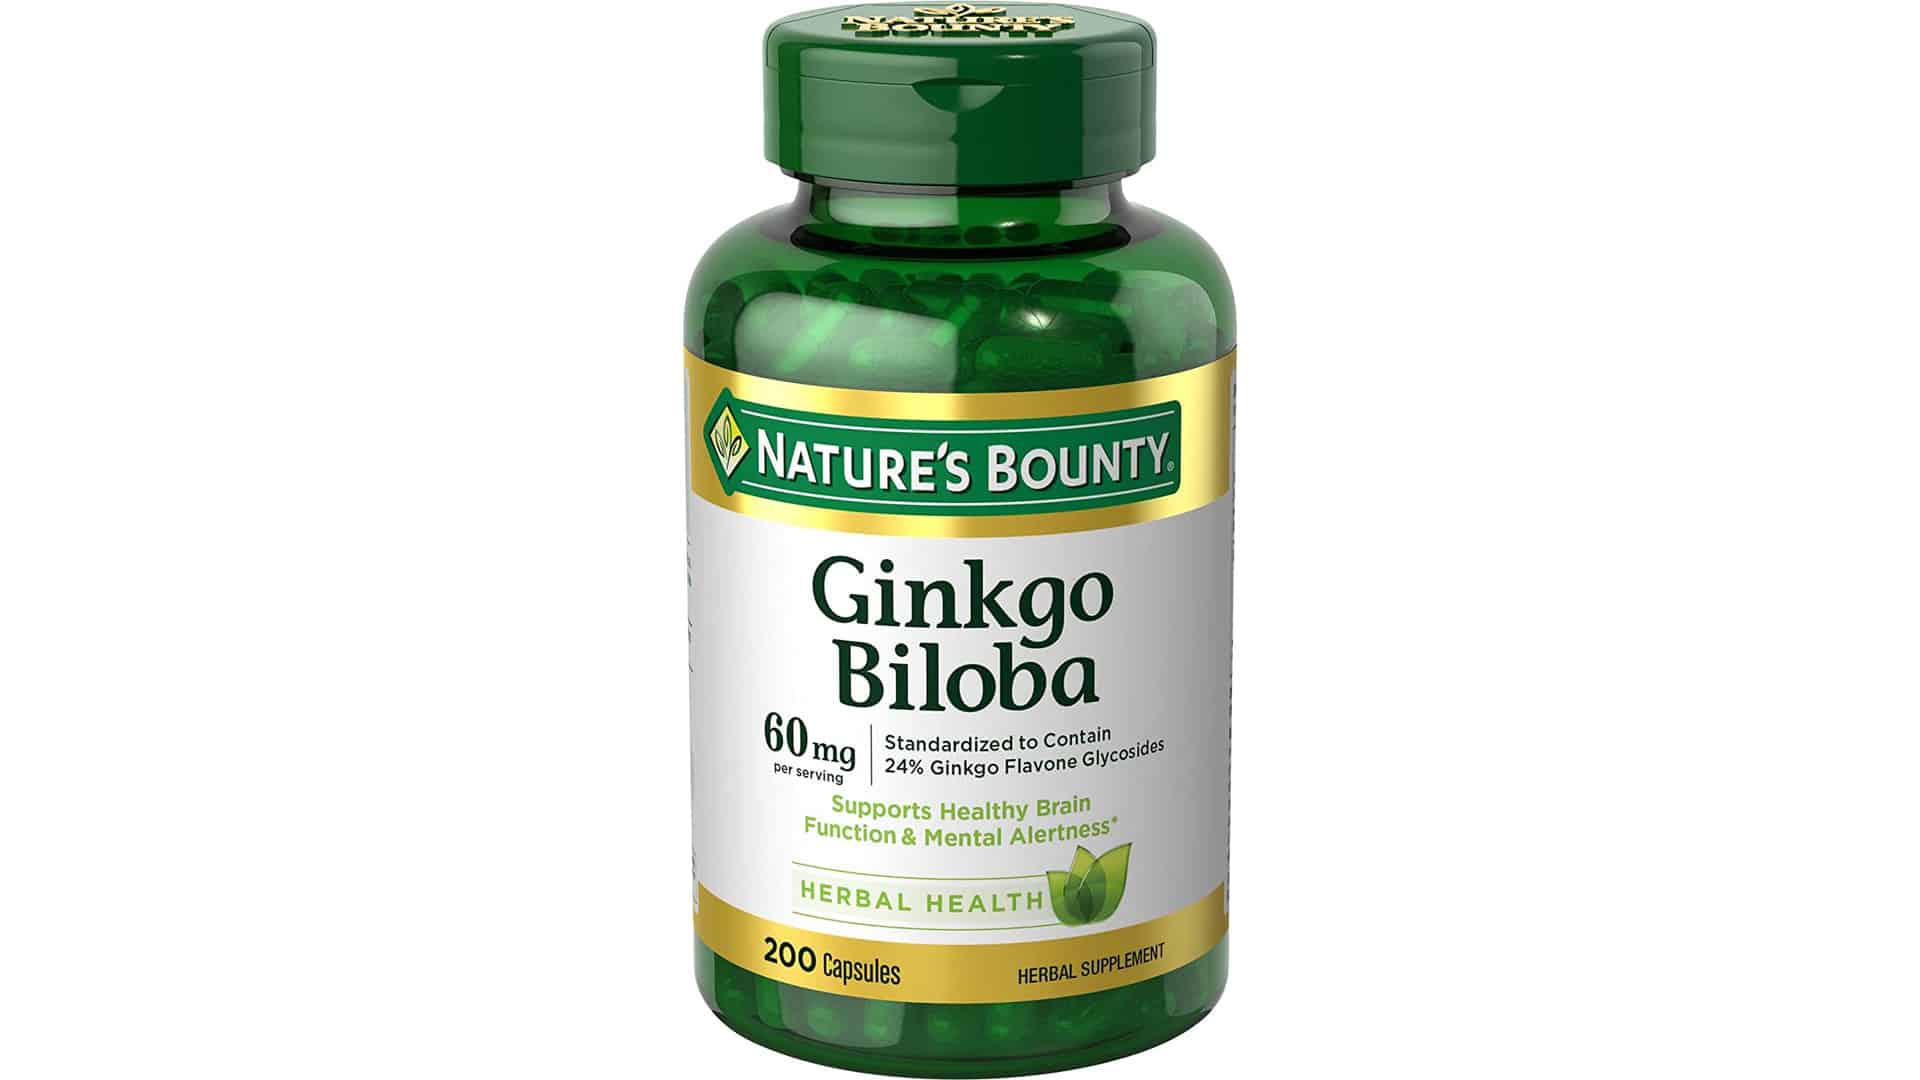 Nature’s Bounty Ginkgo Biloba